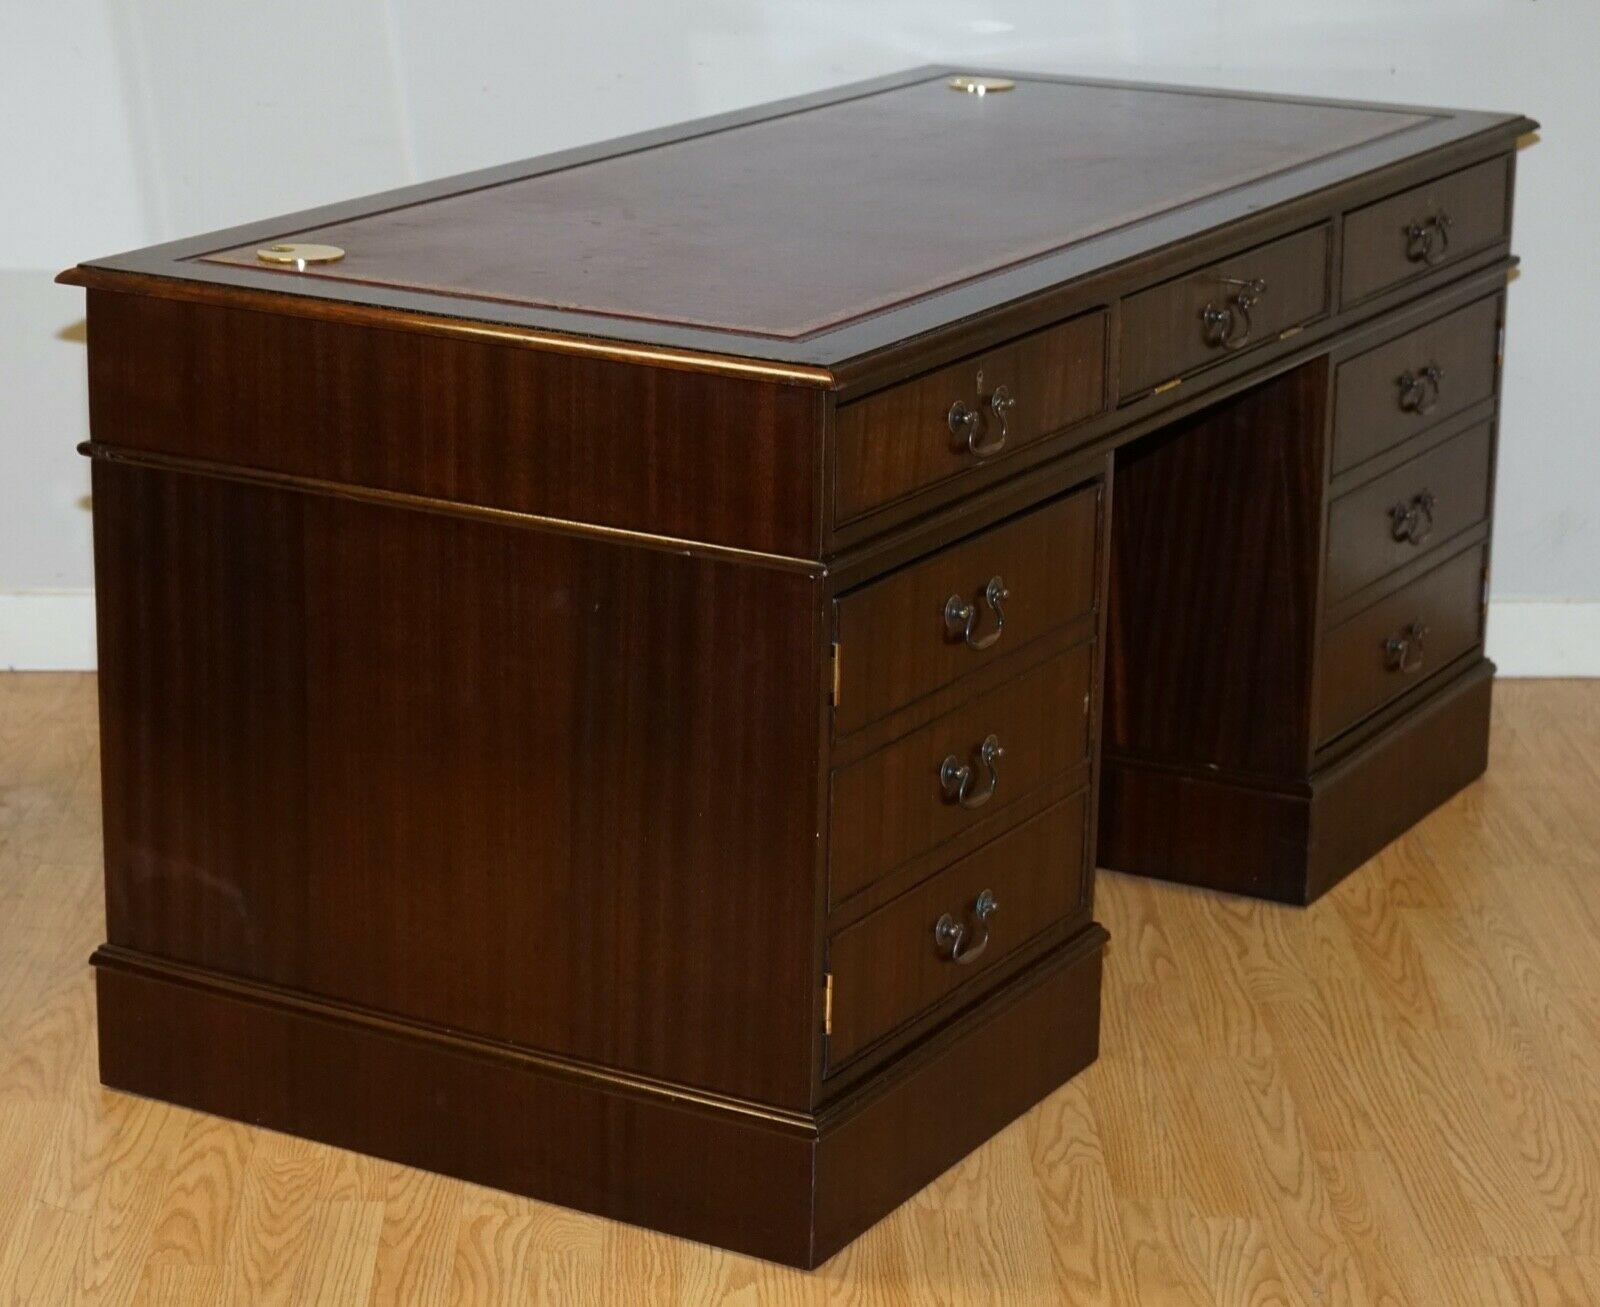 Hardwood Twin Pedestal Partner Desk Leather Top Designed to House Computer 6